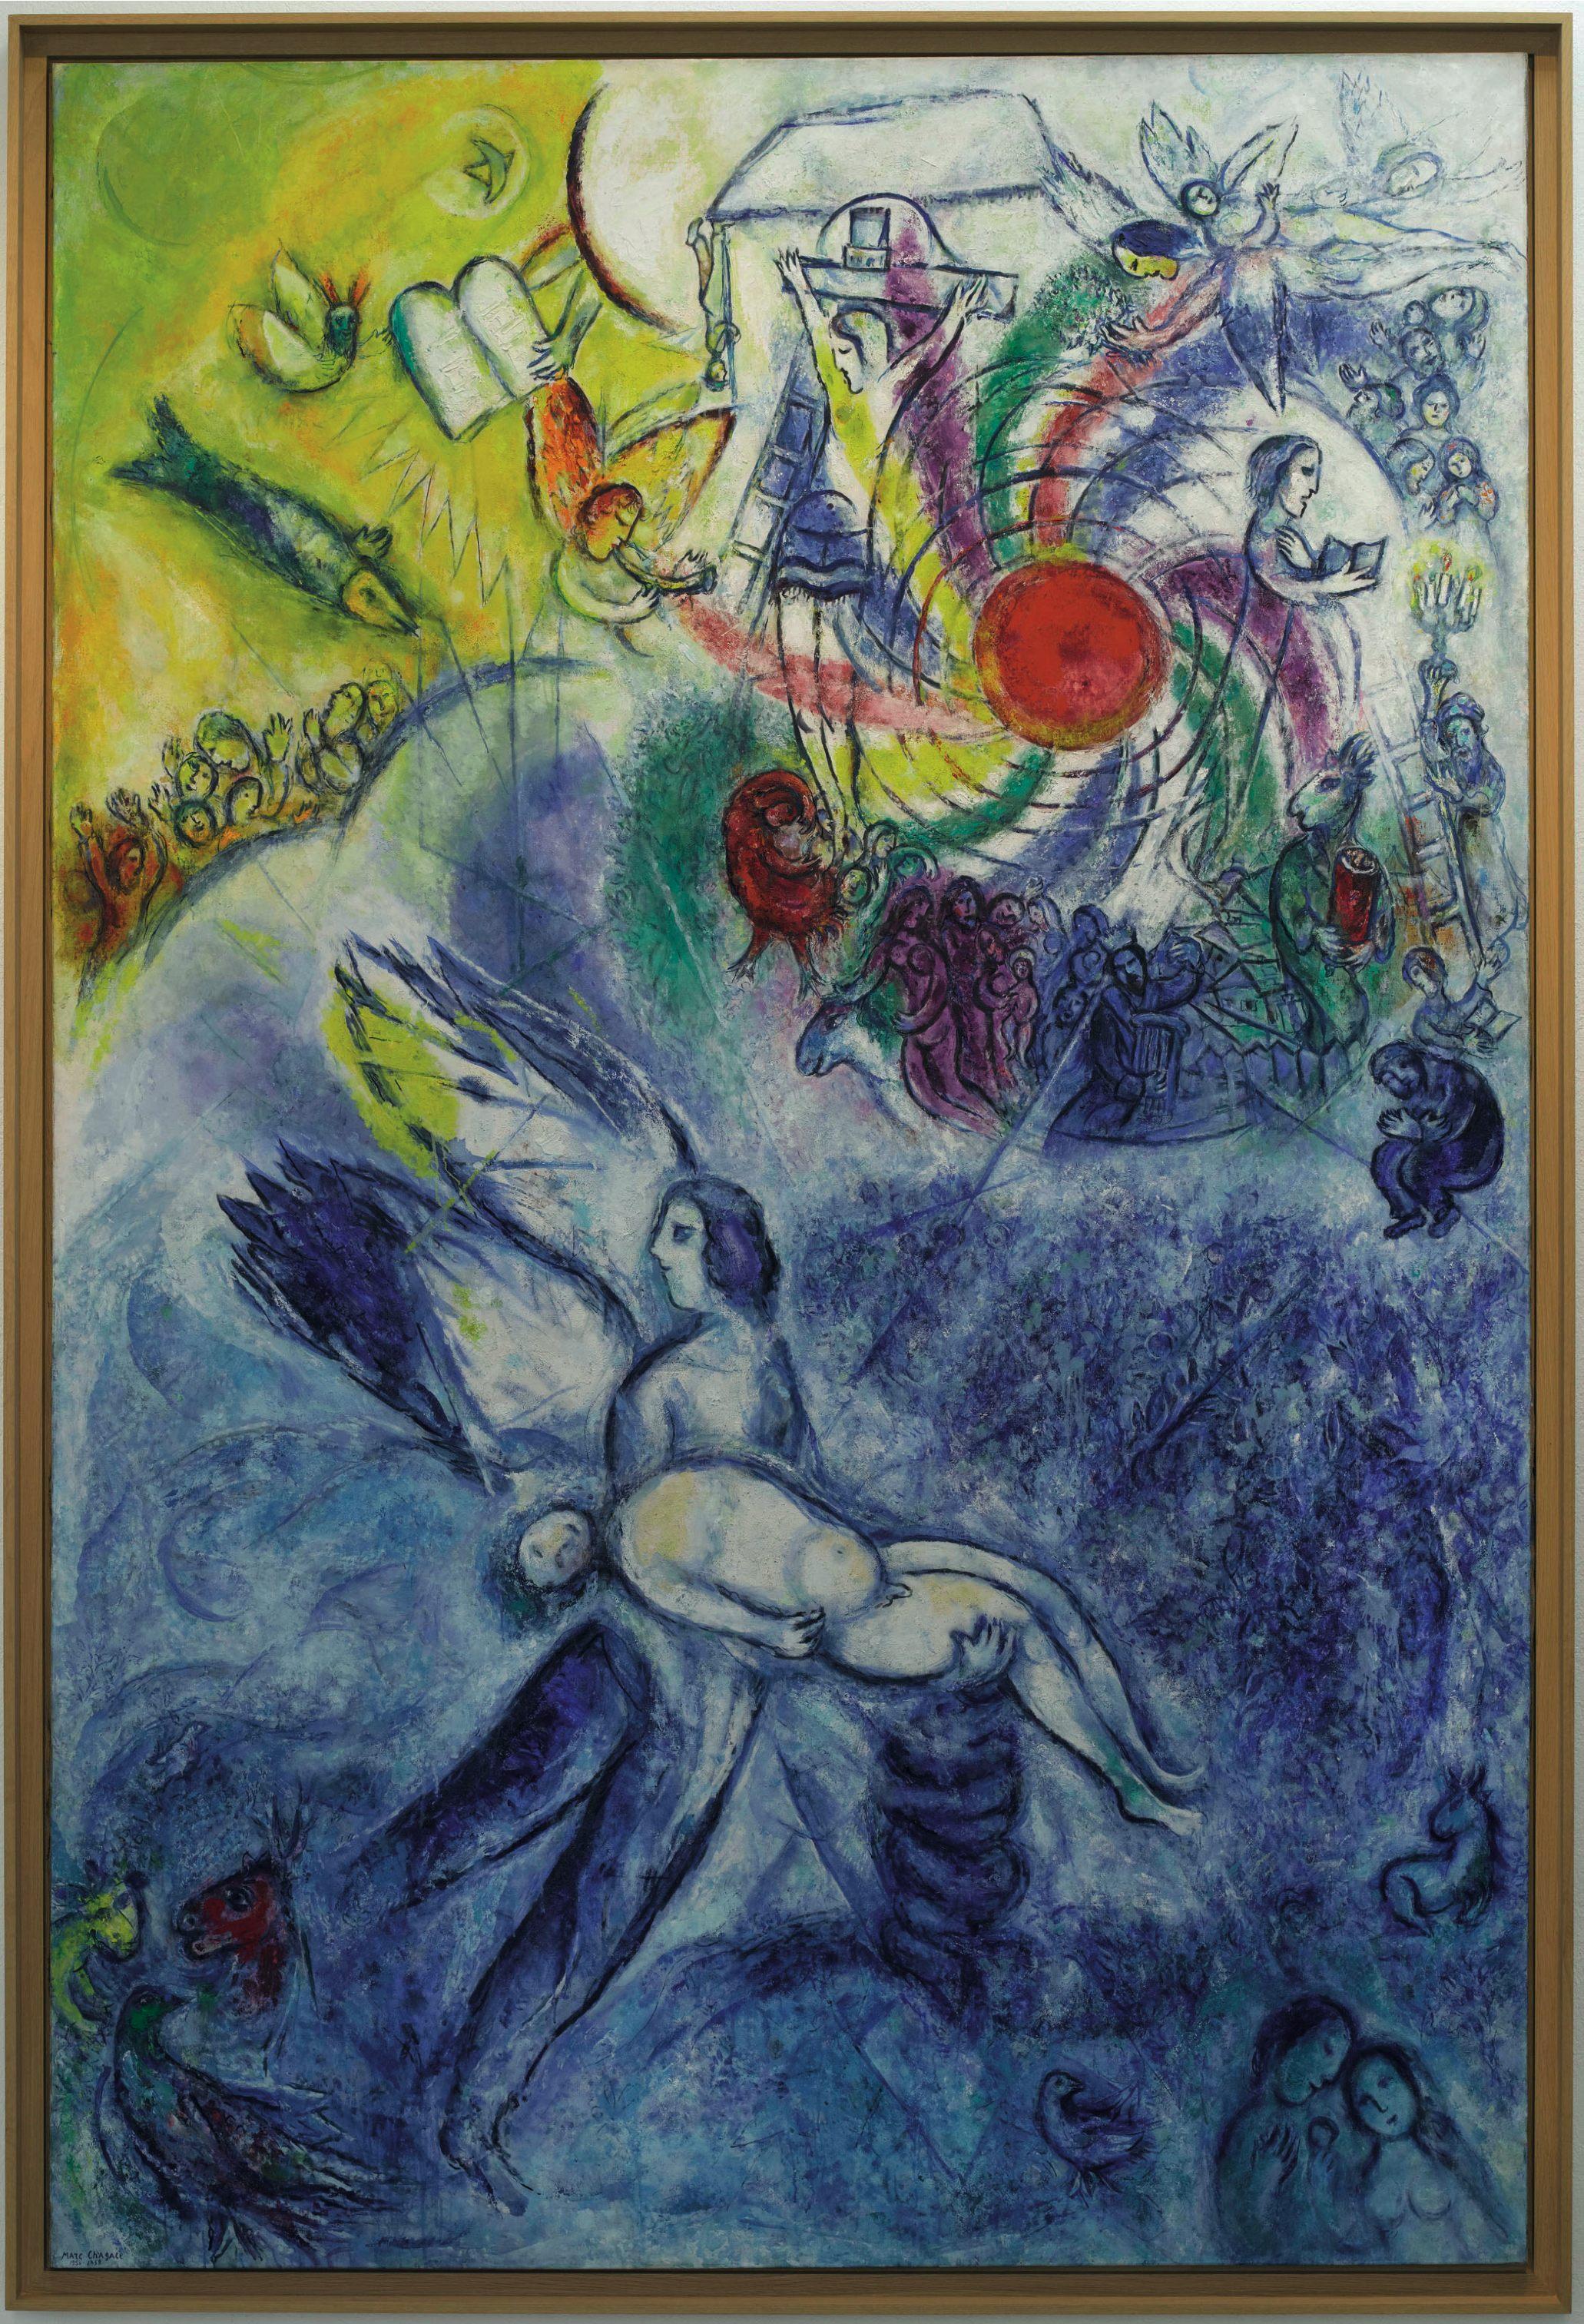 Marc Chagall - La creazione dell’uomo - 1956-58 - Musée national Marc Chagall, Nizza